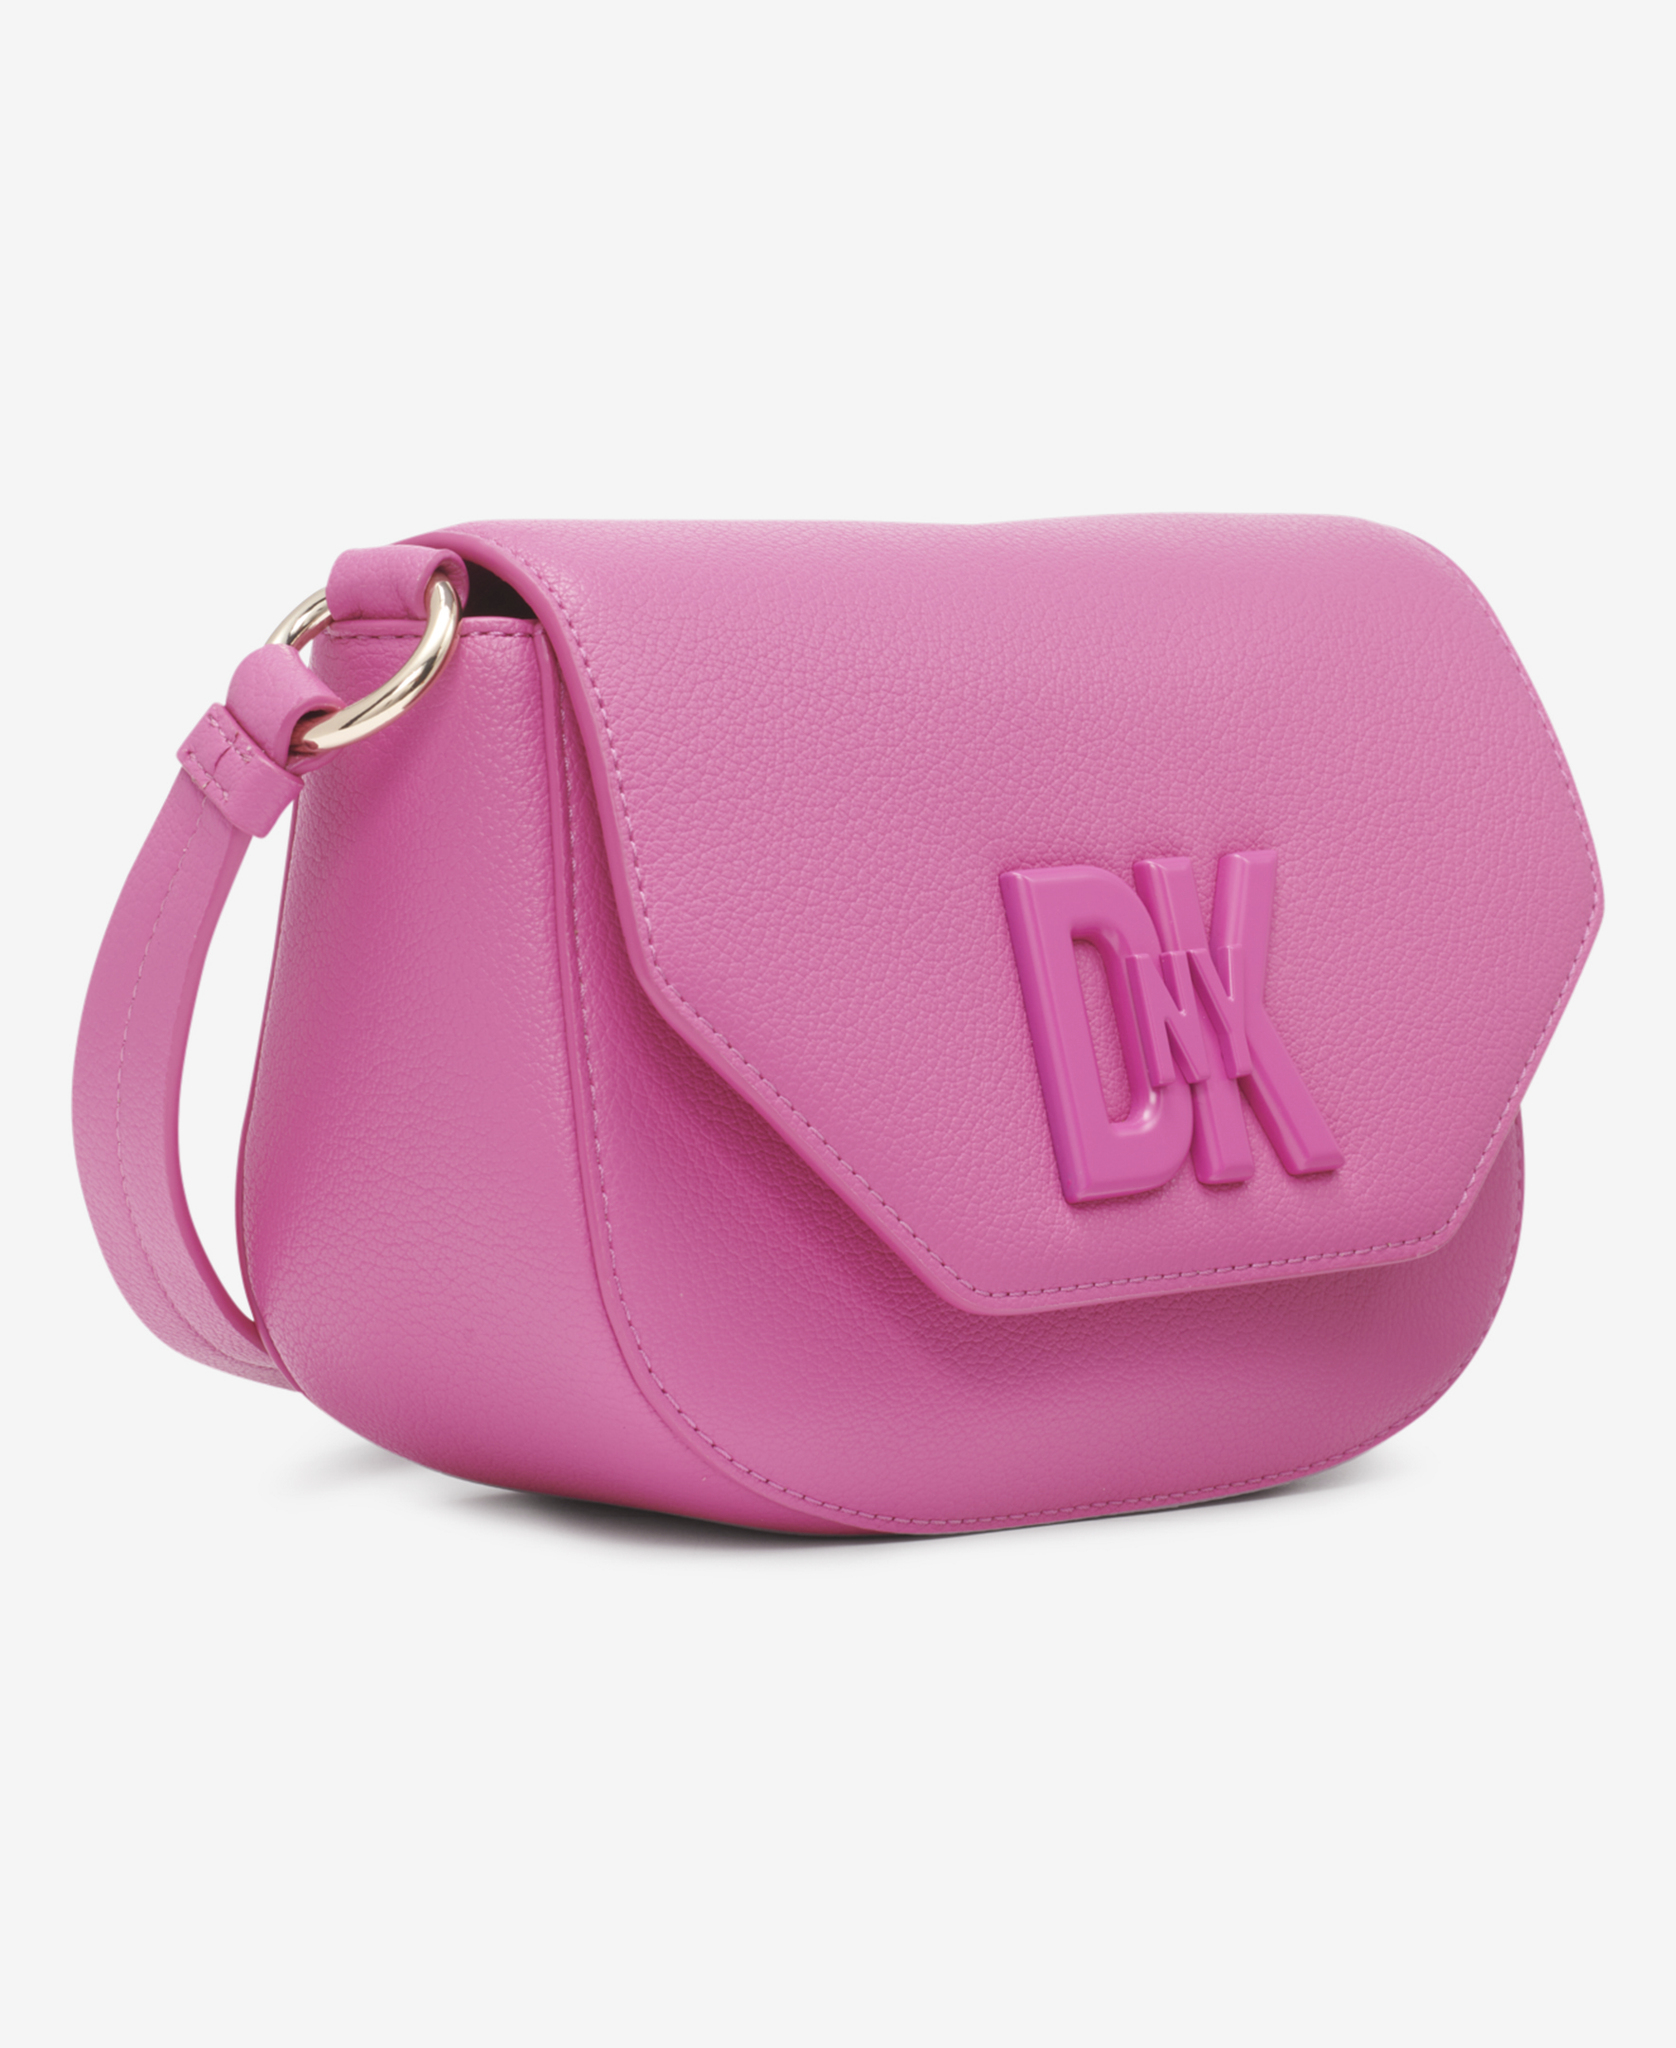 Dkny Bryant Park Raspberry Pink Tote Shoulder Bag Purse Large - DKNY bag -  | Fash Brands